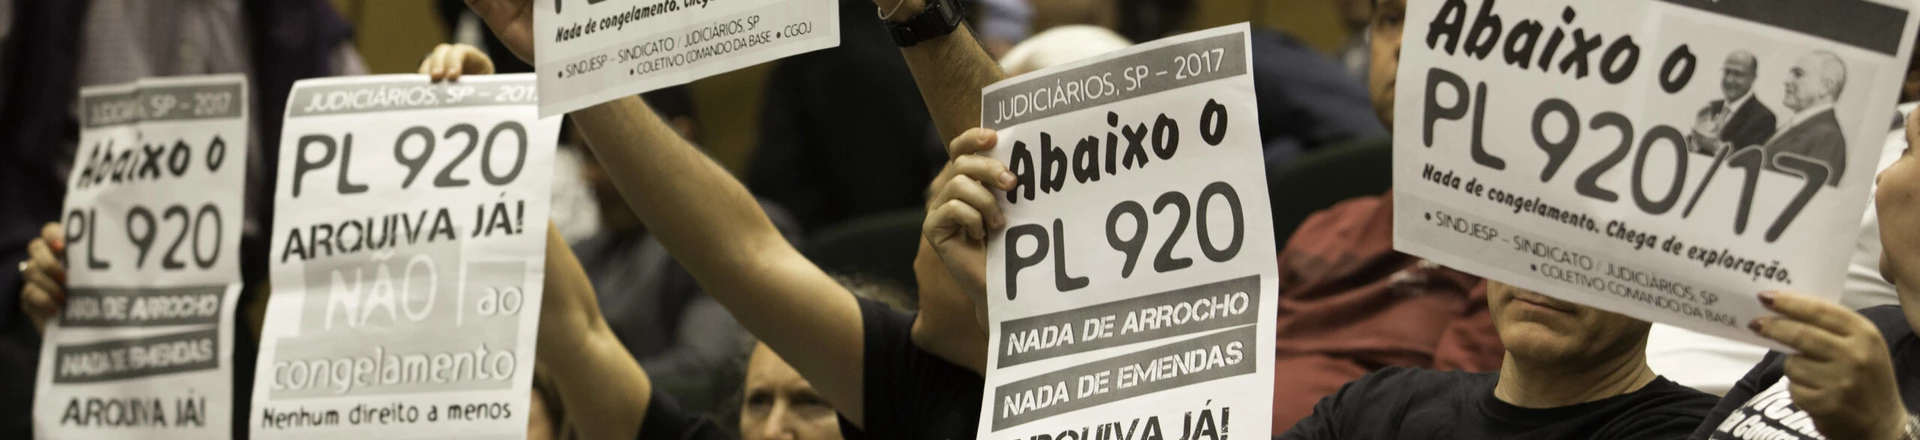 SÃO PAULO, SP - 13.12.2017: PEC DO TETO É VOTADA NA ALESP - Manifestantes contra PL 920 assistem à sessão na ALESP, na tarde desta quarta-feira (13). Deputados debatem e votam a PEC. (Foto: Bruno Rocha /Fotoarena/Folhapress) ORG XMIT: 1447516